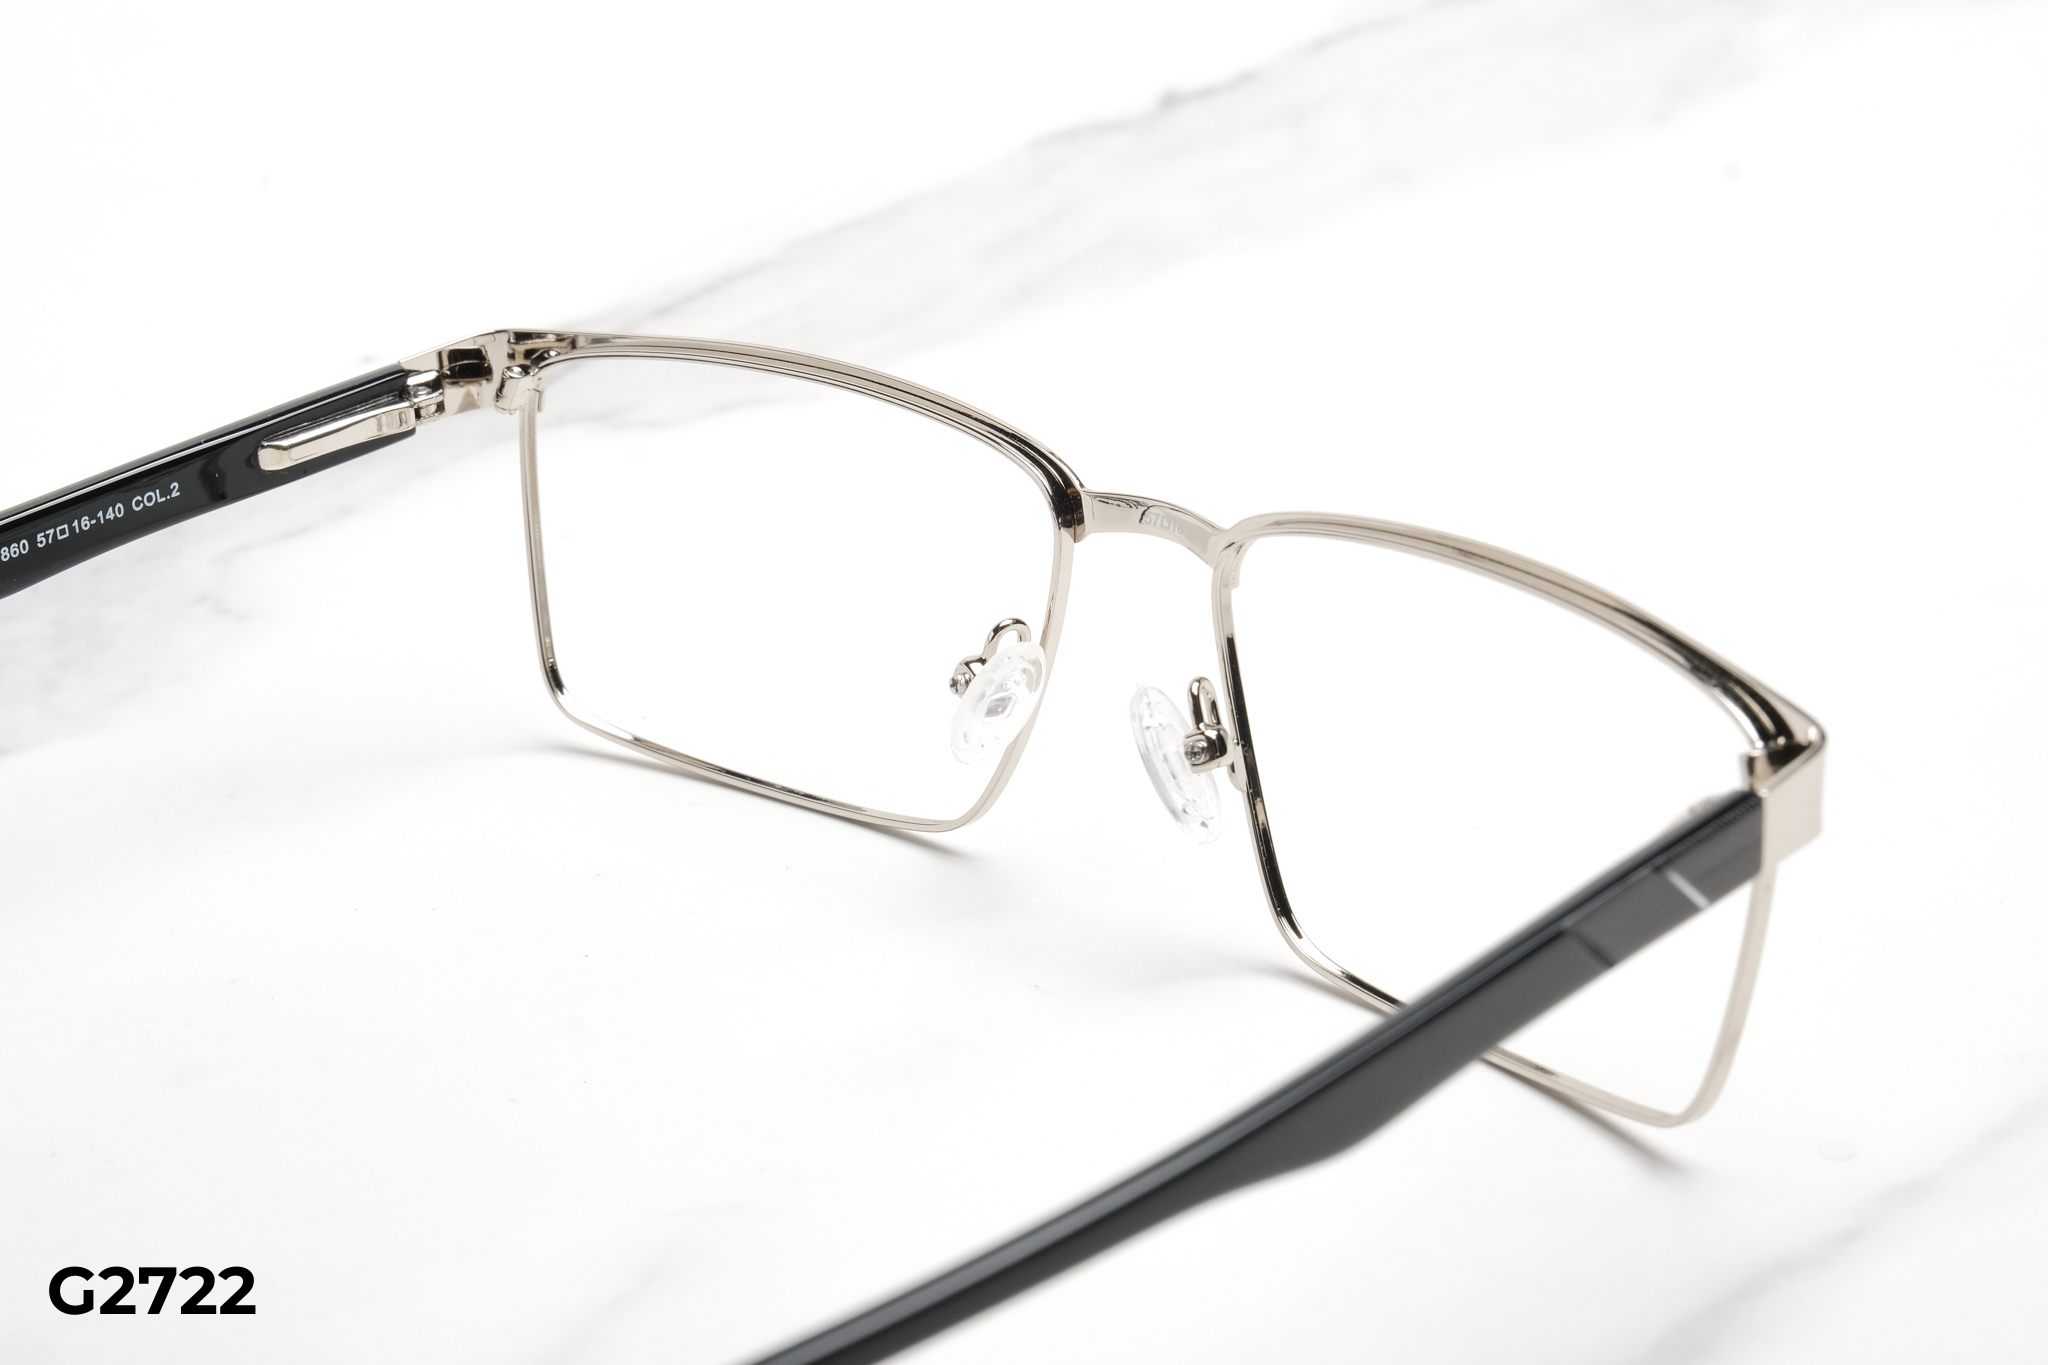  Rex-ton Eyewear - Glasses - G2722 